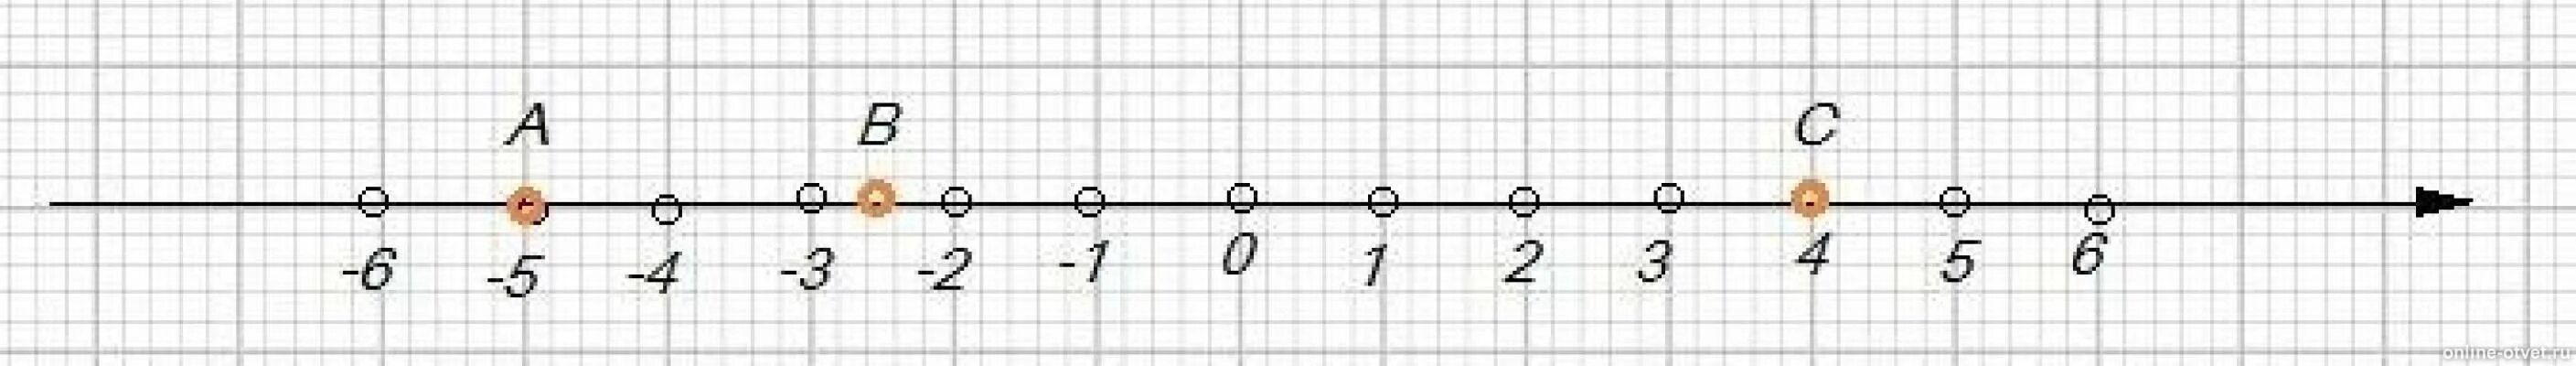 Какая точка лежит левее на координатной прямой. Изобразите на координатной прямой точки а -5 в -2.5 с 4. Изобразите на координатной прямой точки. Изобразите на координатной прямой точки а - 4. Изобразите на координатной прямой точки 1 2/5.